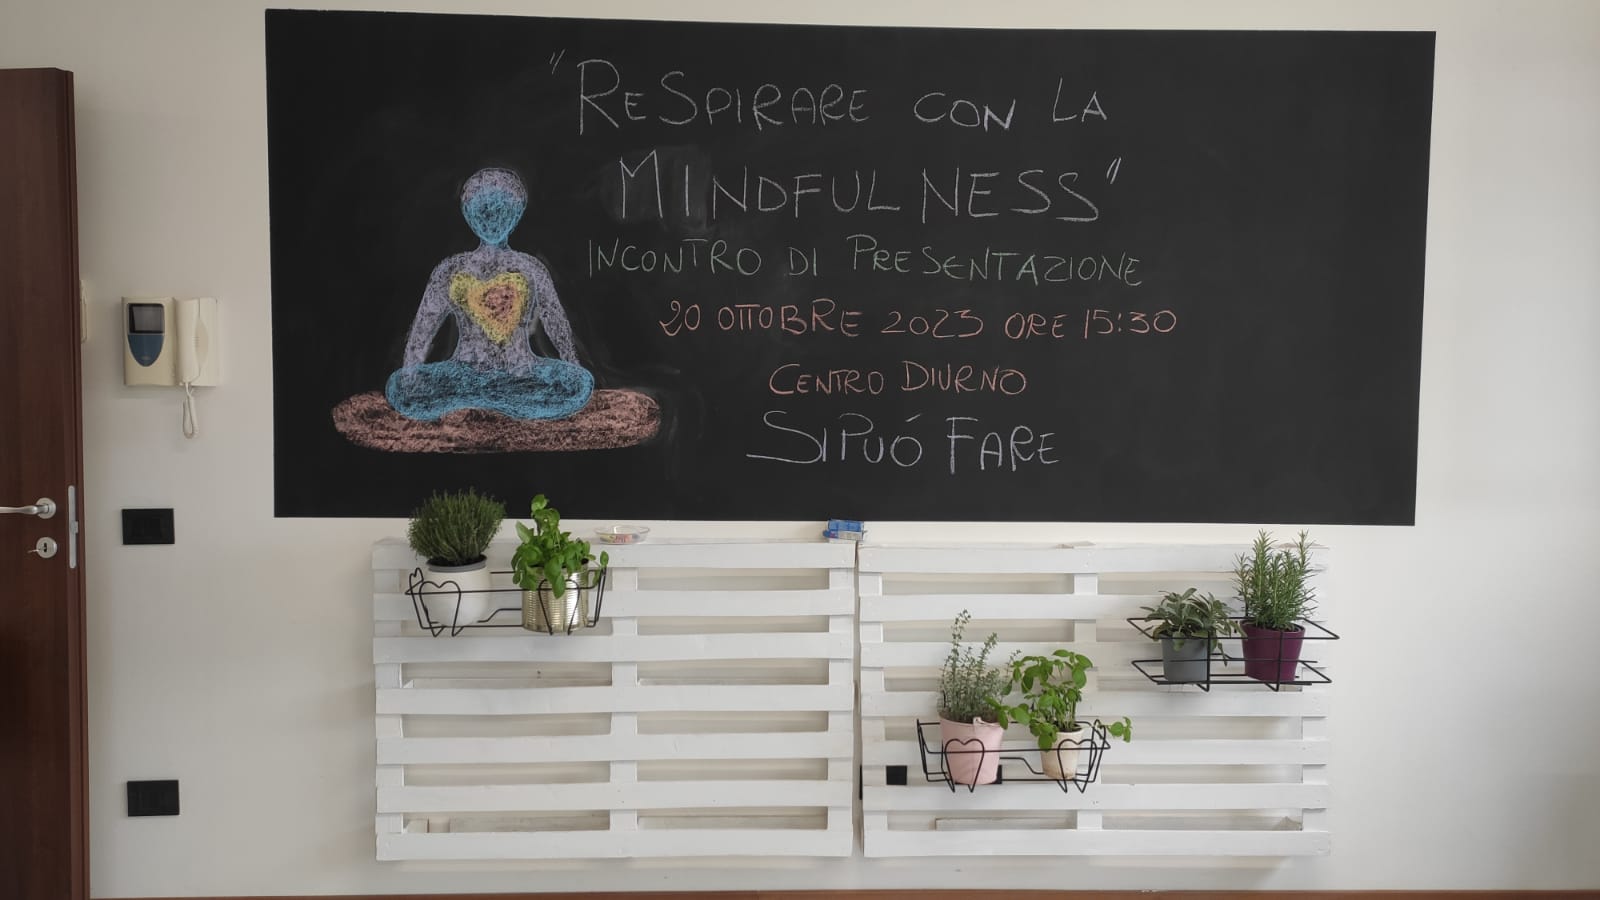 Incontro di presentazione “Respirare con la mindfulness”: alcune riflessioni